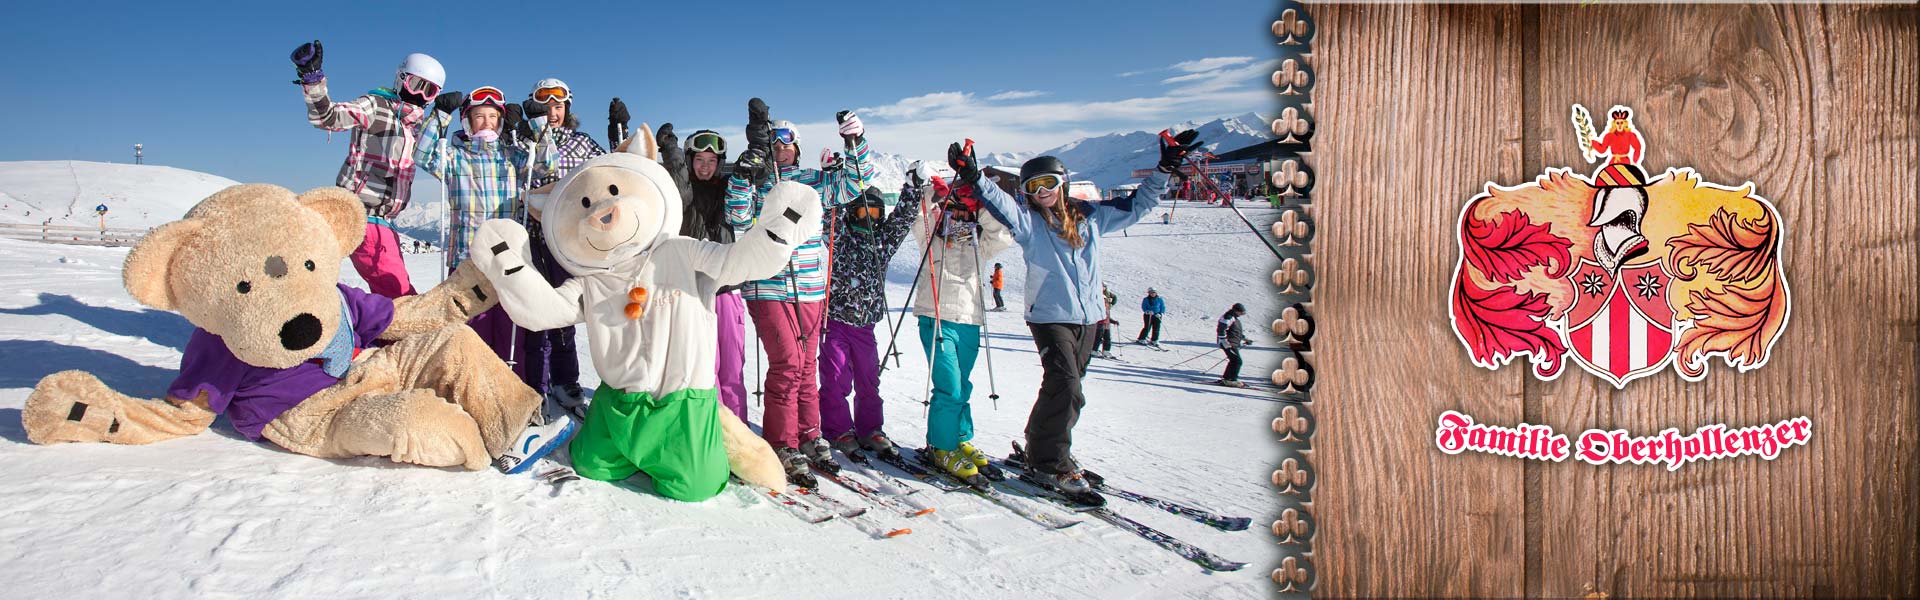 Skispaß für die Kinder in der Wilkogel Arena